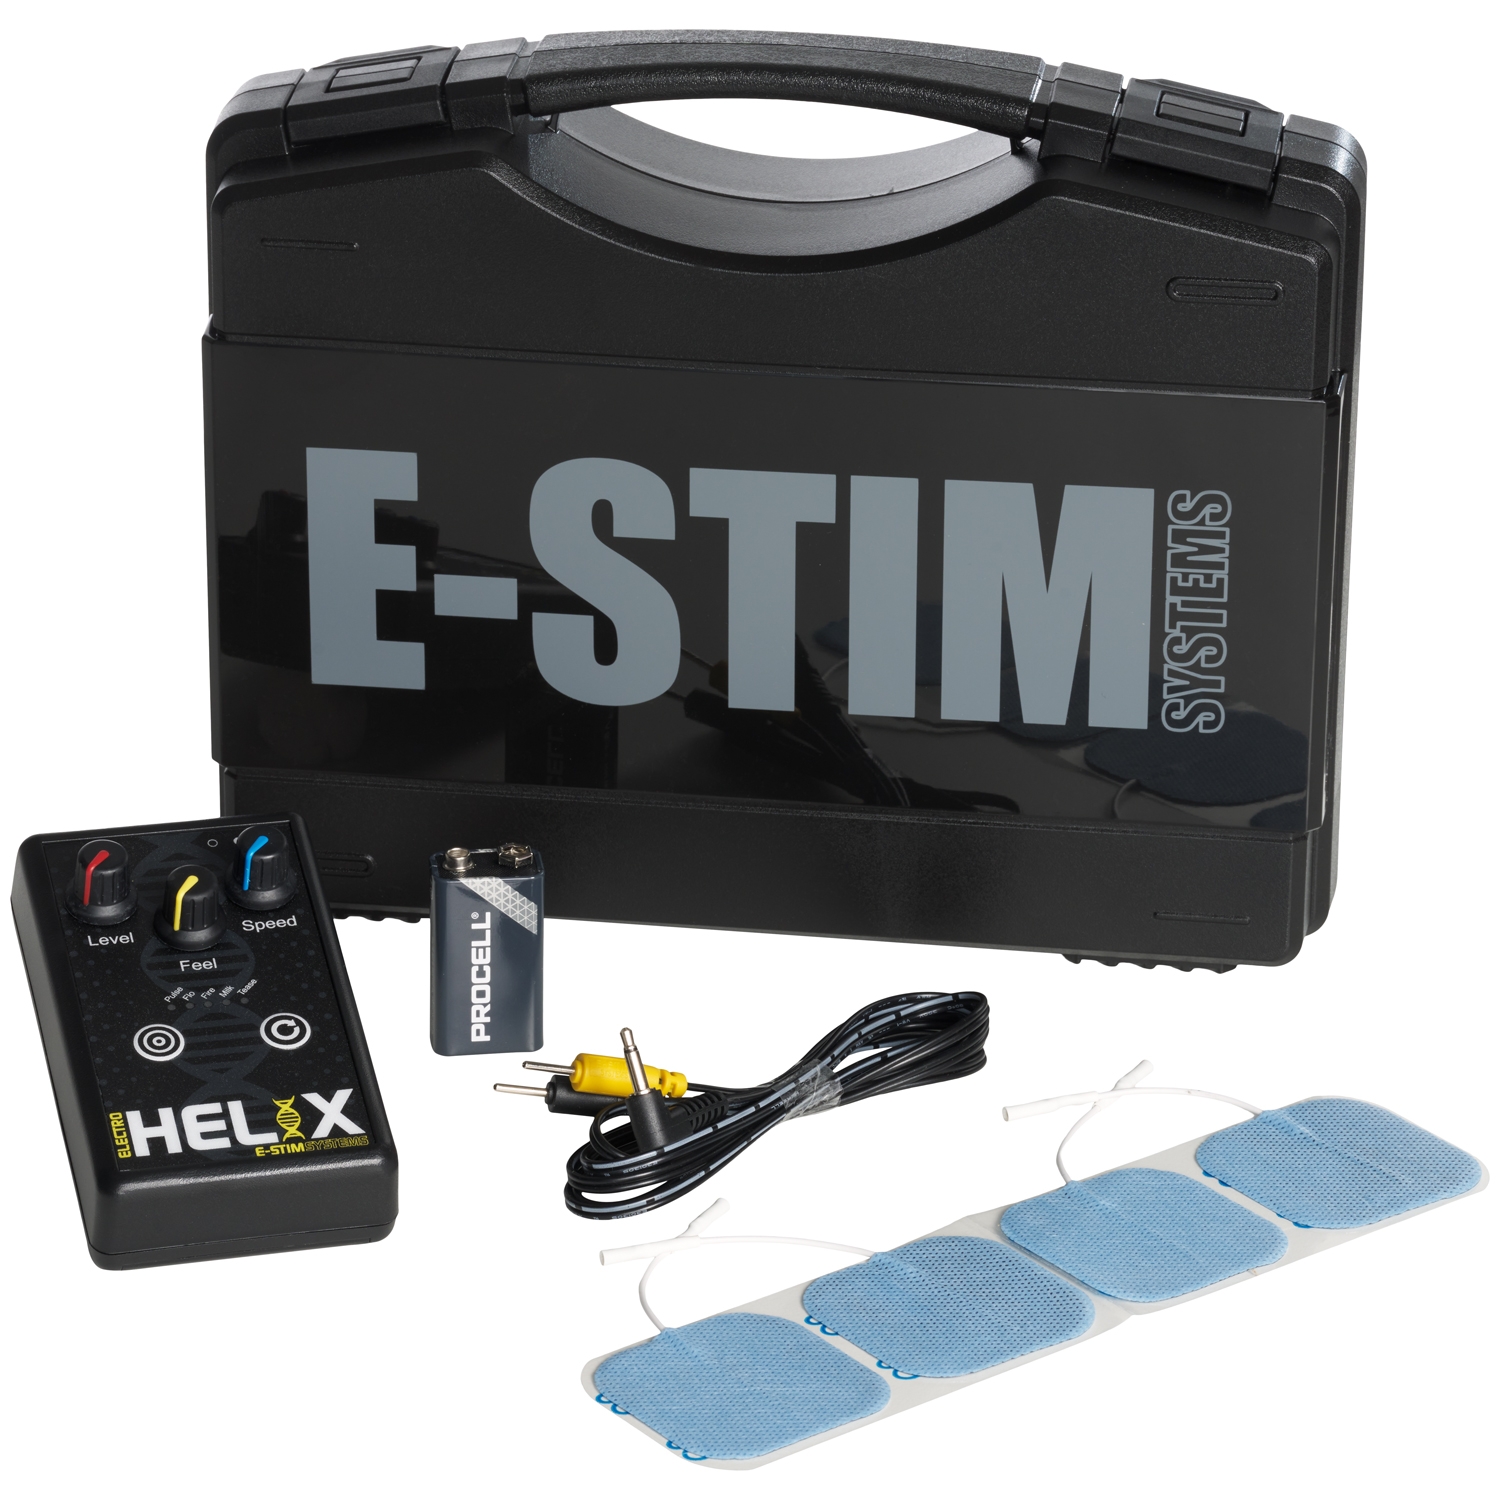 E-Stim Systems, EStim, Electrostim, Electrosex